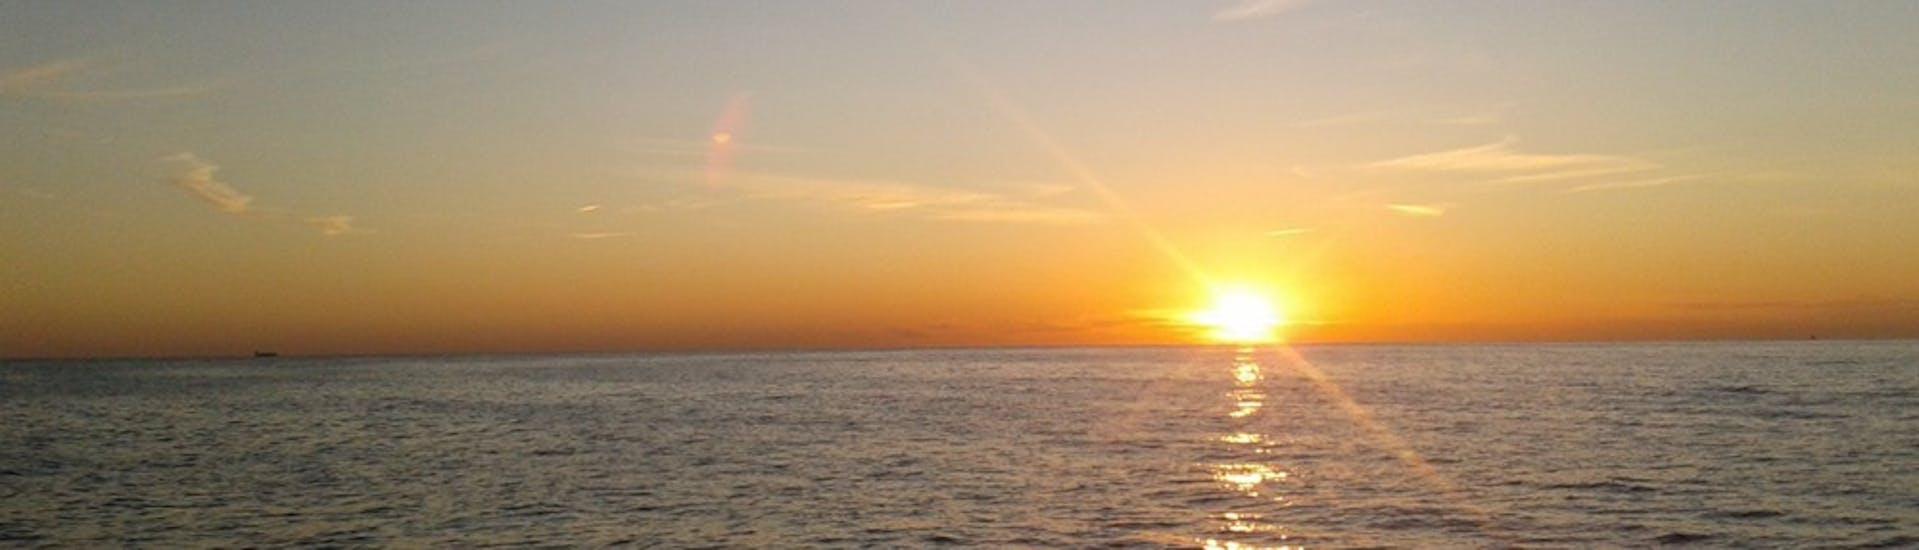 Uitzicht op de ondergaande zon aan de horizon tijdens een catamarantocht bij zonsondergang vanuit Calpe met Cava.